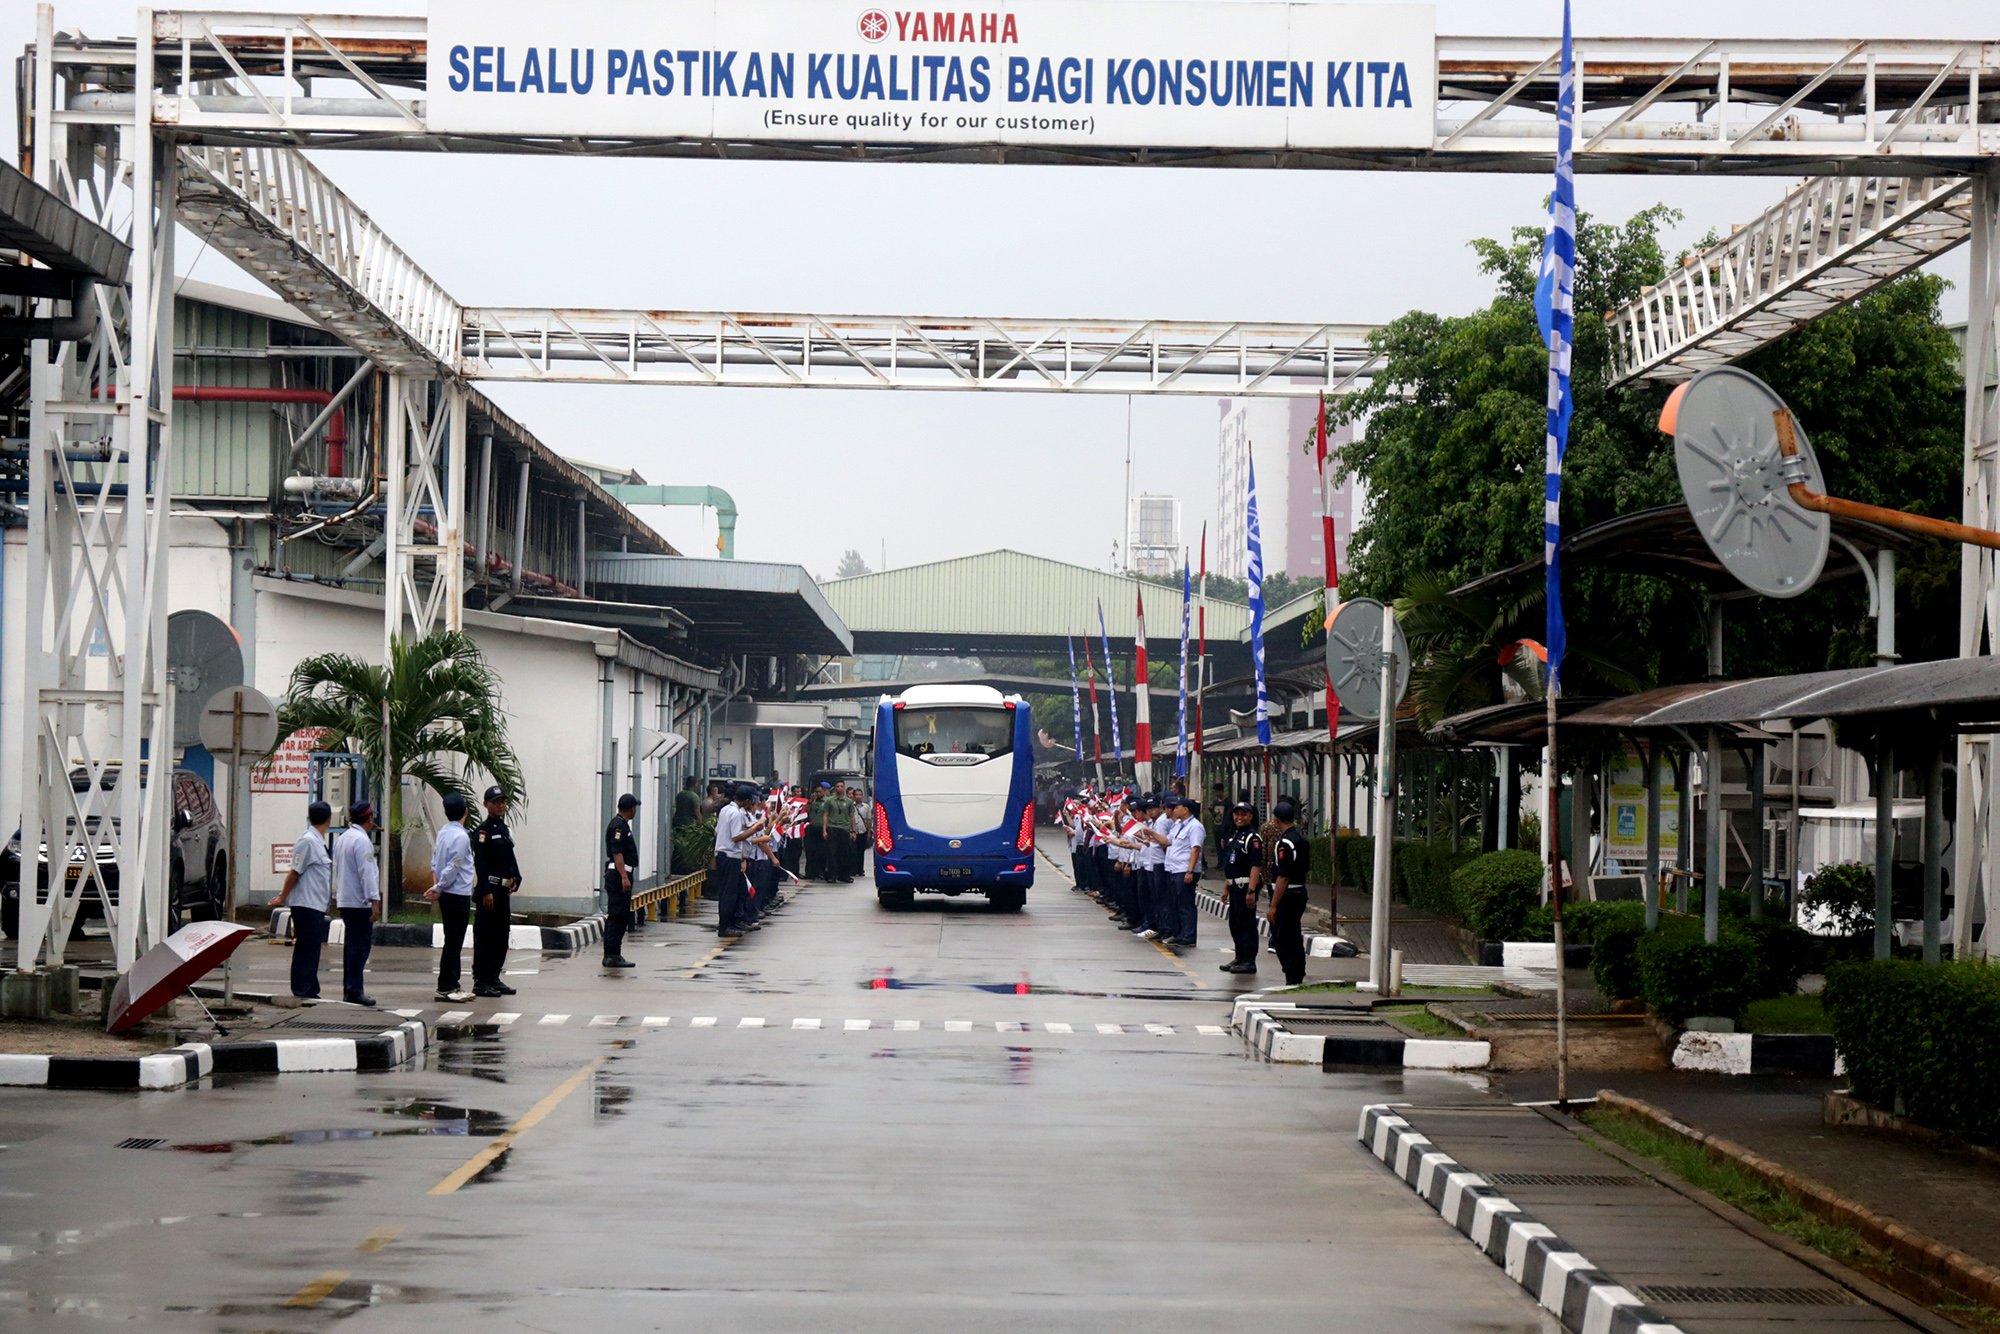 Presiden Joko widodo apresiasi PT YIMM yang telah meraih prestasi dengan jumlah ekspor kendaraan roda dua terbesar di Indonesia, yakni 1,5 juta.